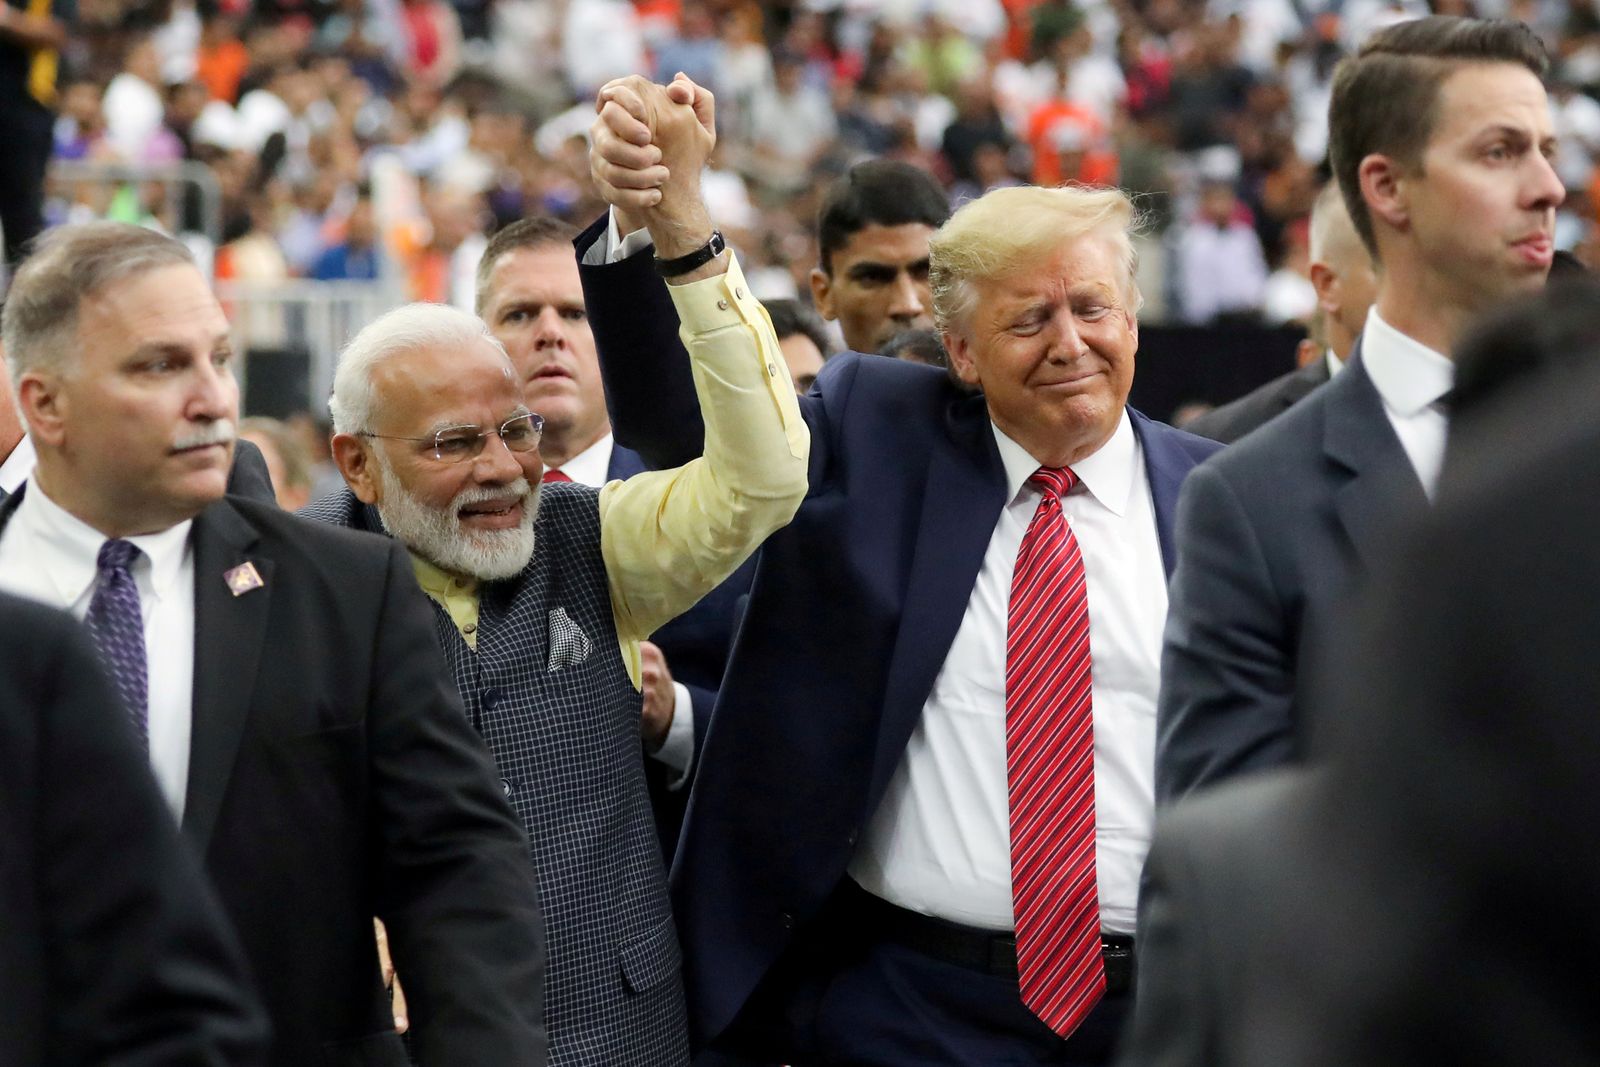 الرئيس الأميركي السابق دونالد ترمب ورئيس الوزراء الهندي ناريندرا مودي خلال تجمّع في مدينة هيوستن الأميركية - 22 سبتمبر 2019  - REUTERS